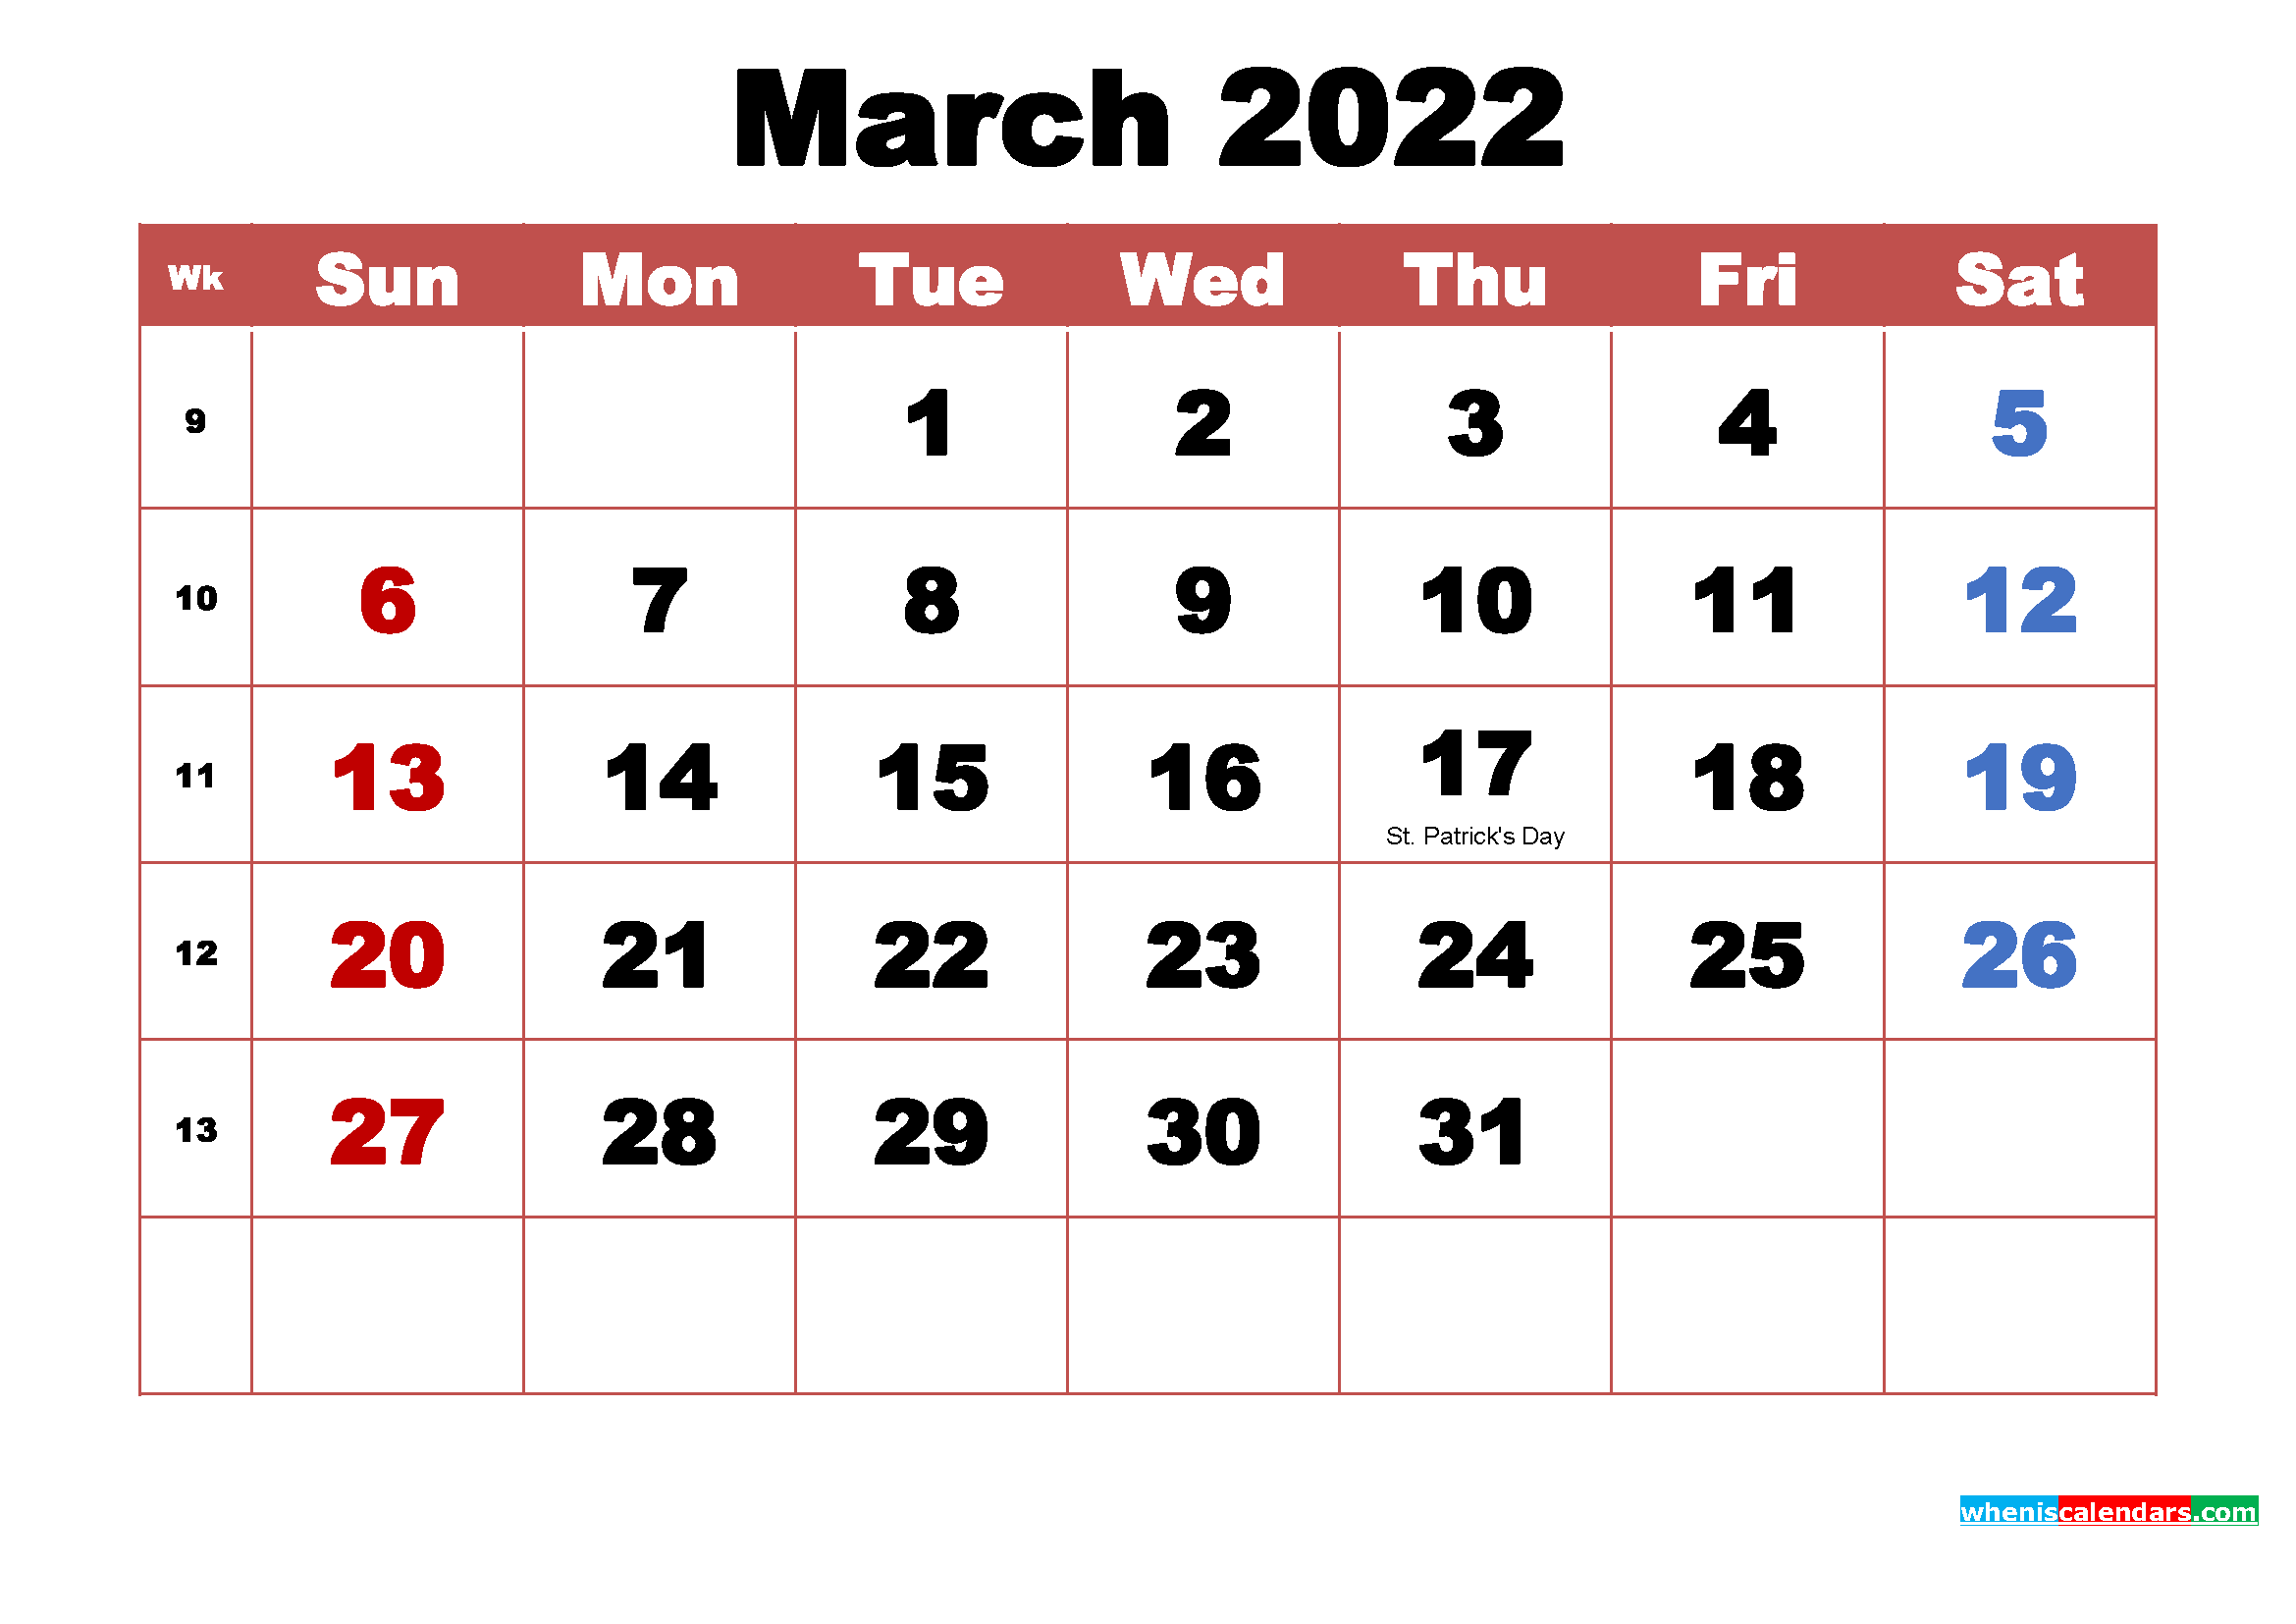  download March 2022 Calendar Wallpaper High Resolution 2339x1654